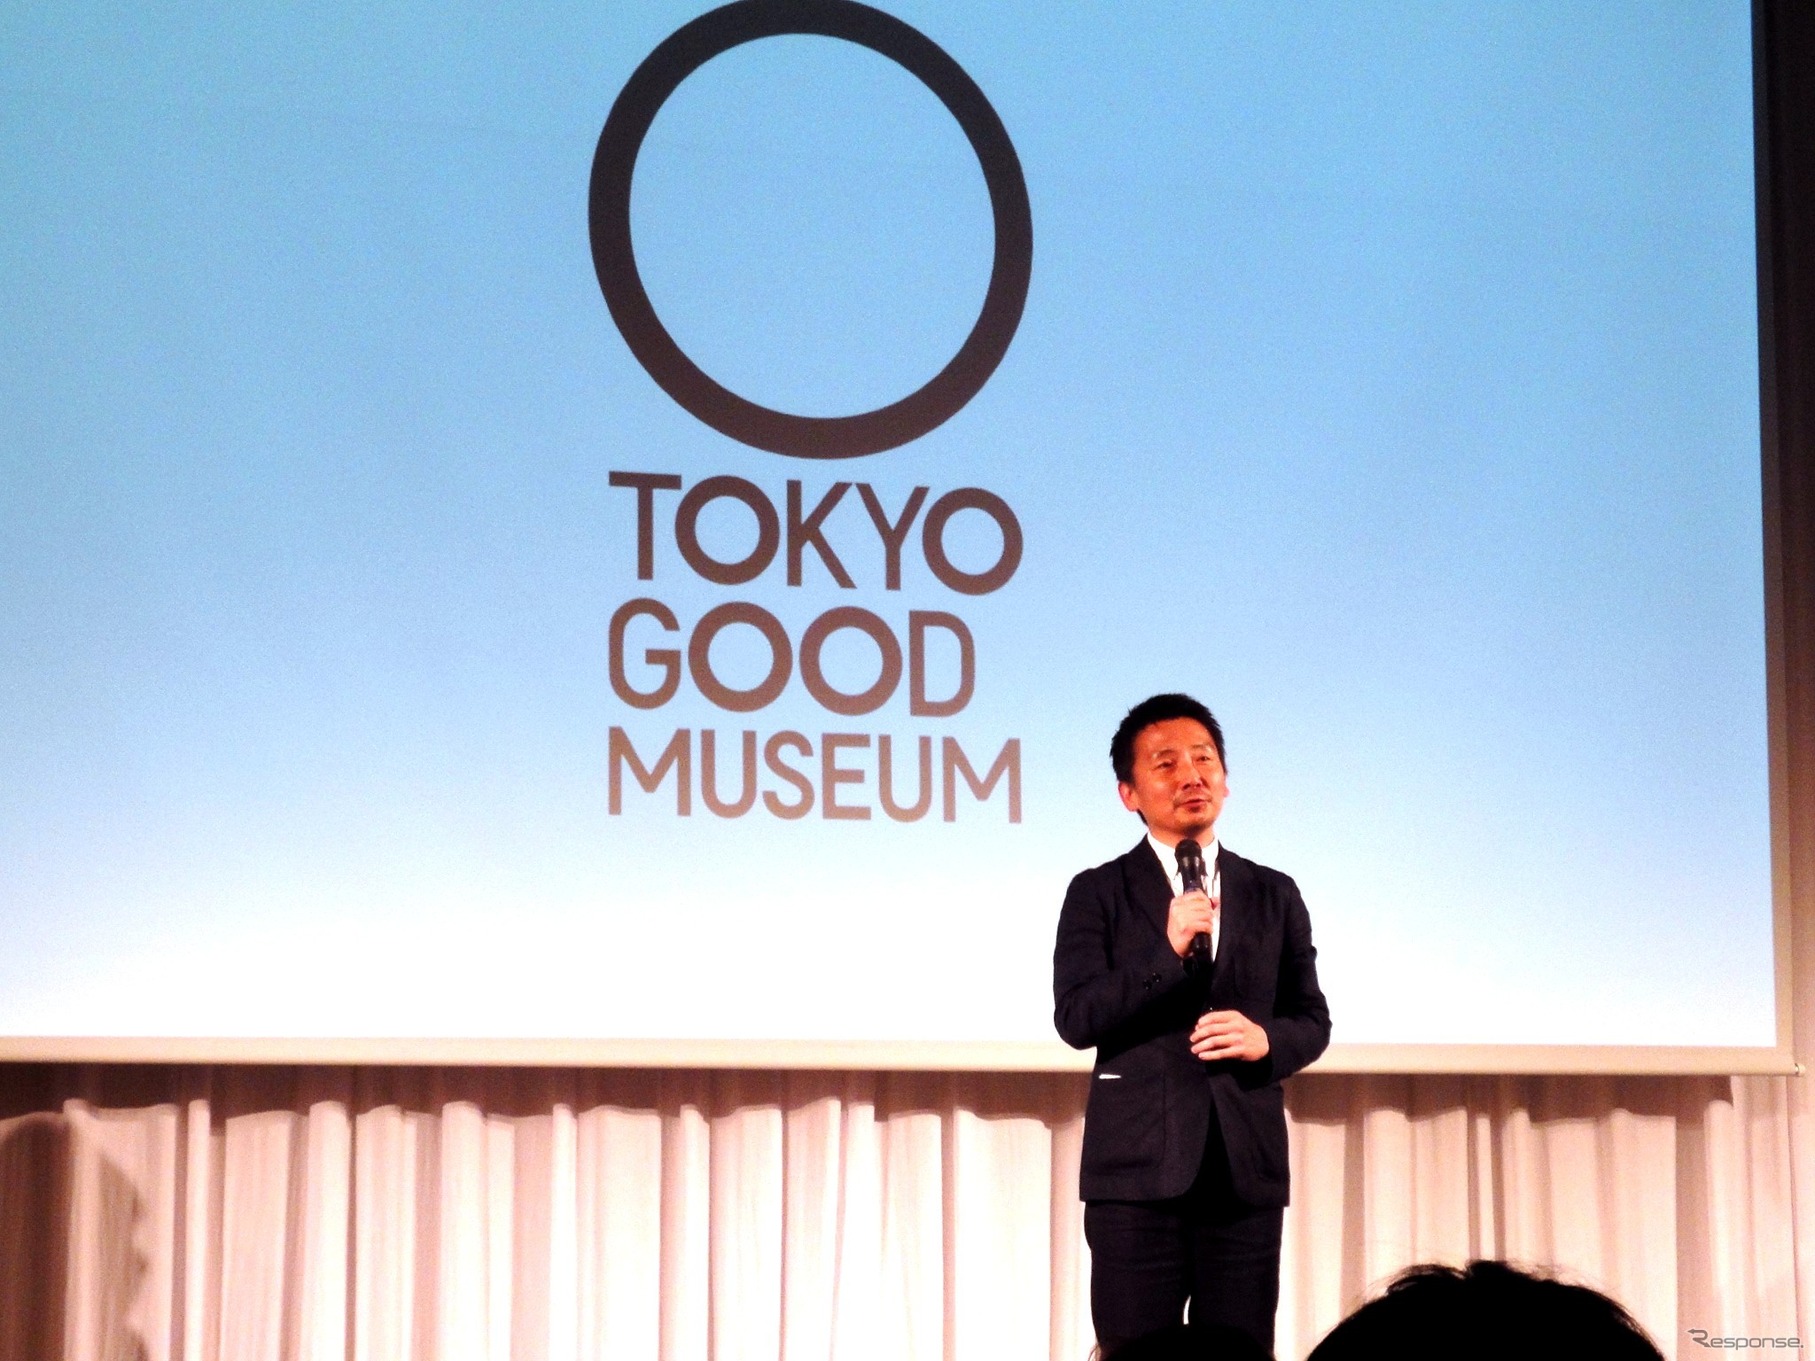 東京マナーを再認識、国内外へ発信…Tokyo Good Manners Project 始動